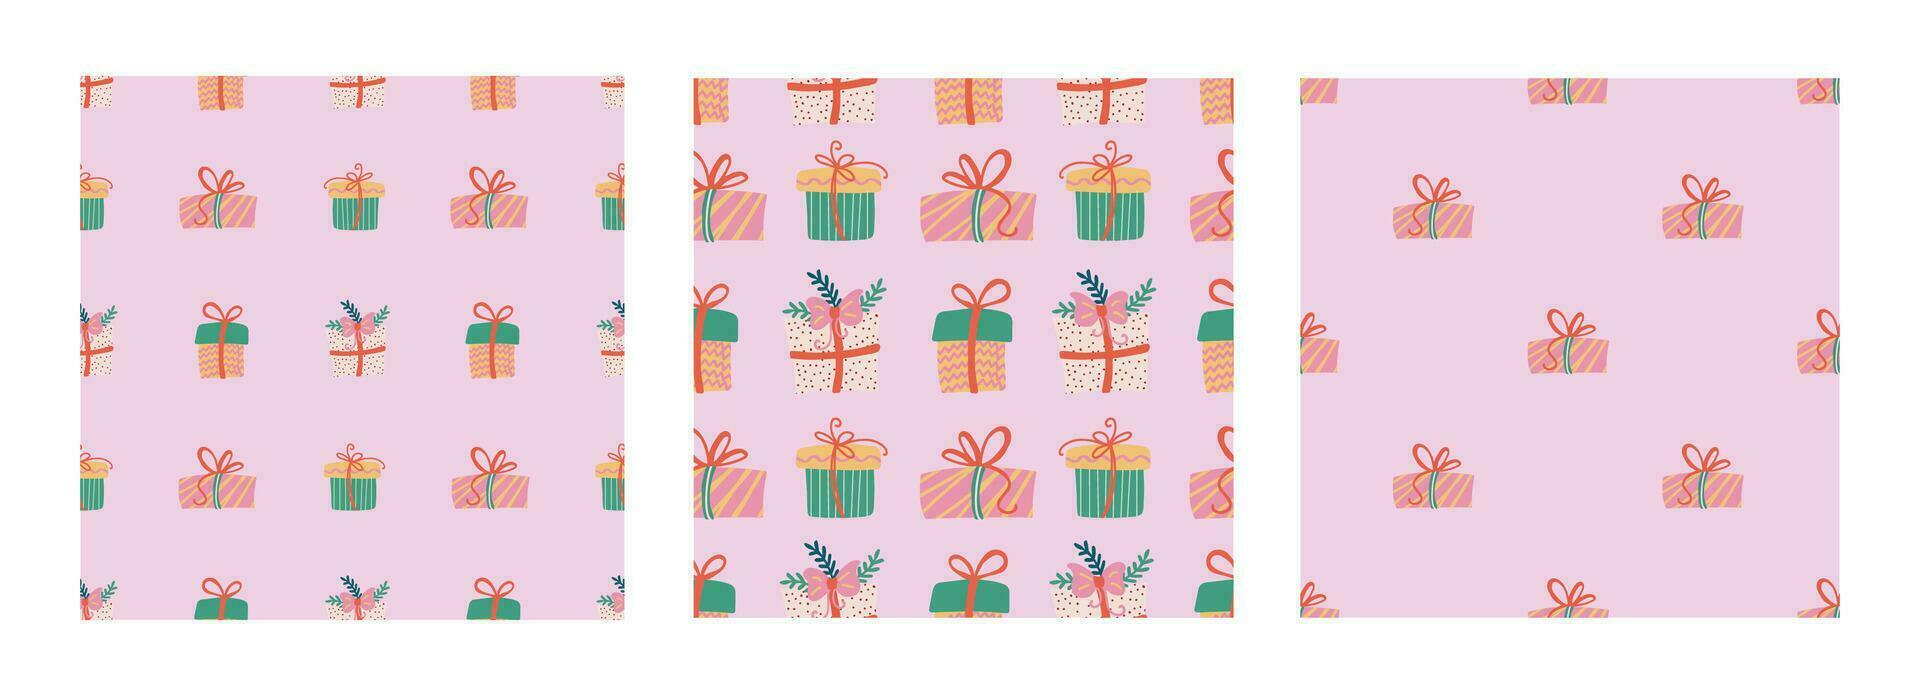 Navidad regalos sin costura modelo colocar. festivo de moda decorativo regalo cajas mano dibujado moderno vector textura